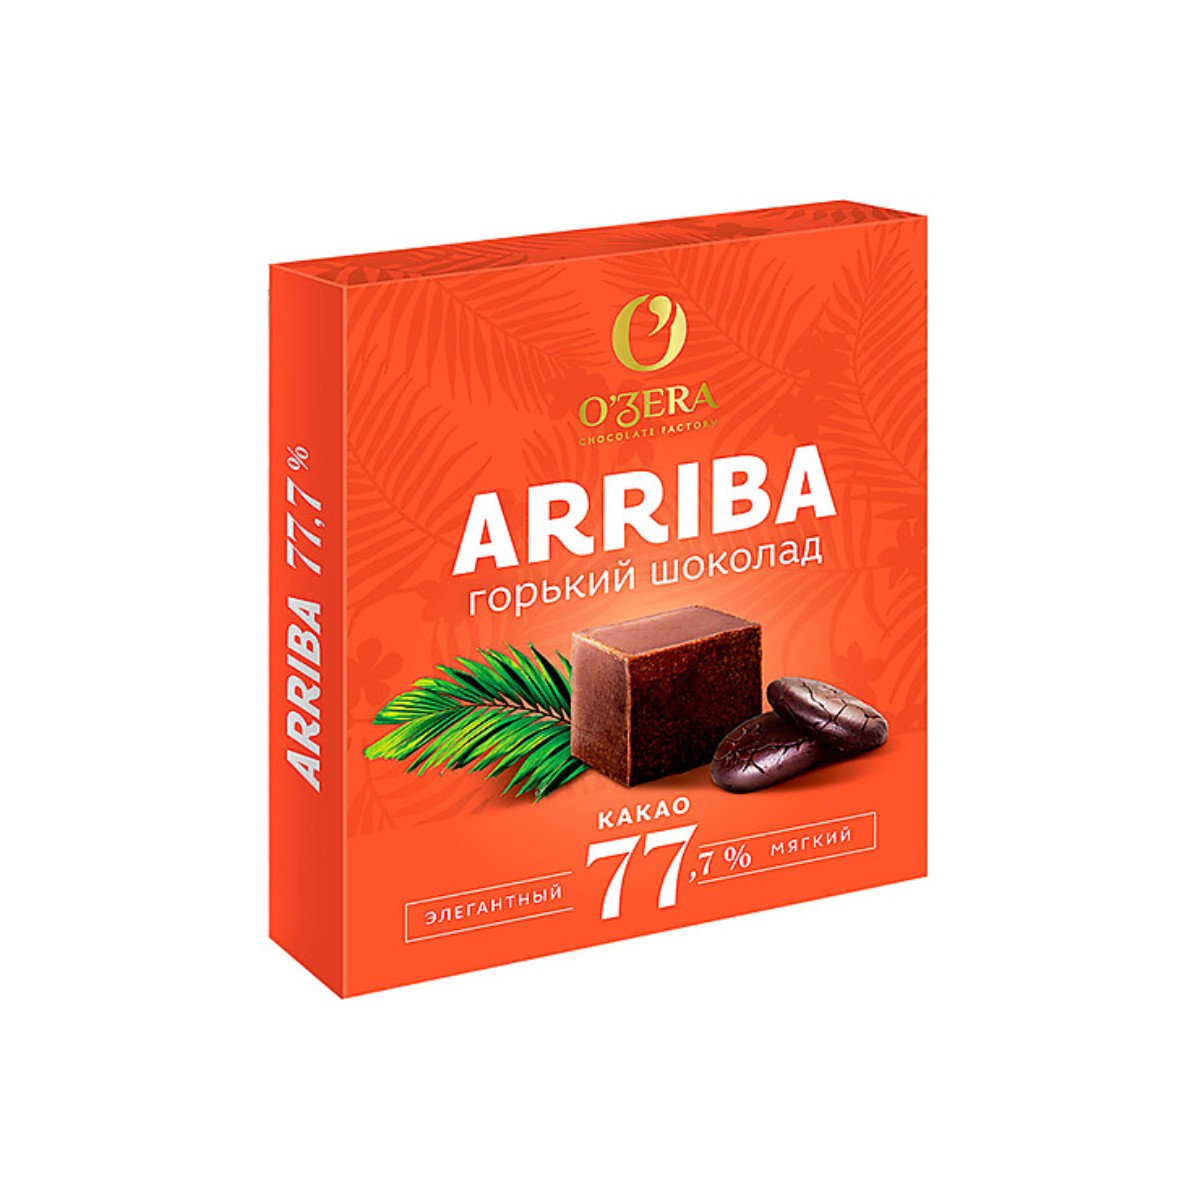 Шоколад O'Zera Arriba, содержание какао 77,7%, 3 шт по 90 г